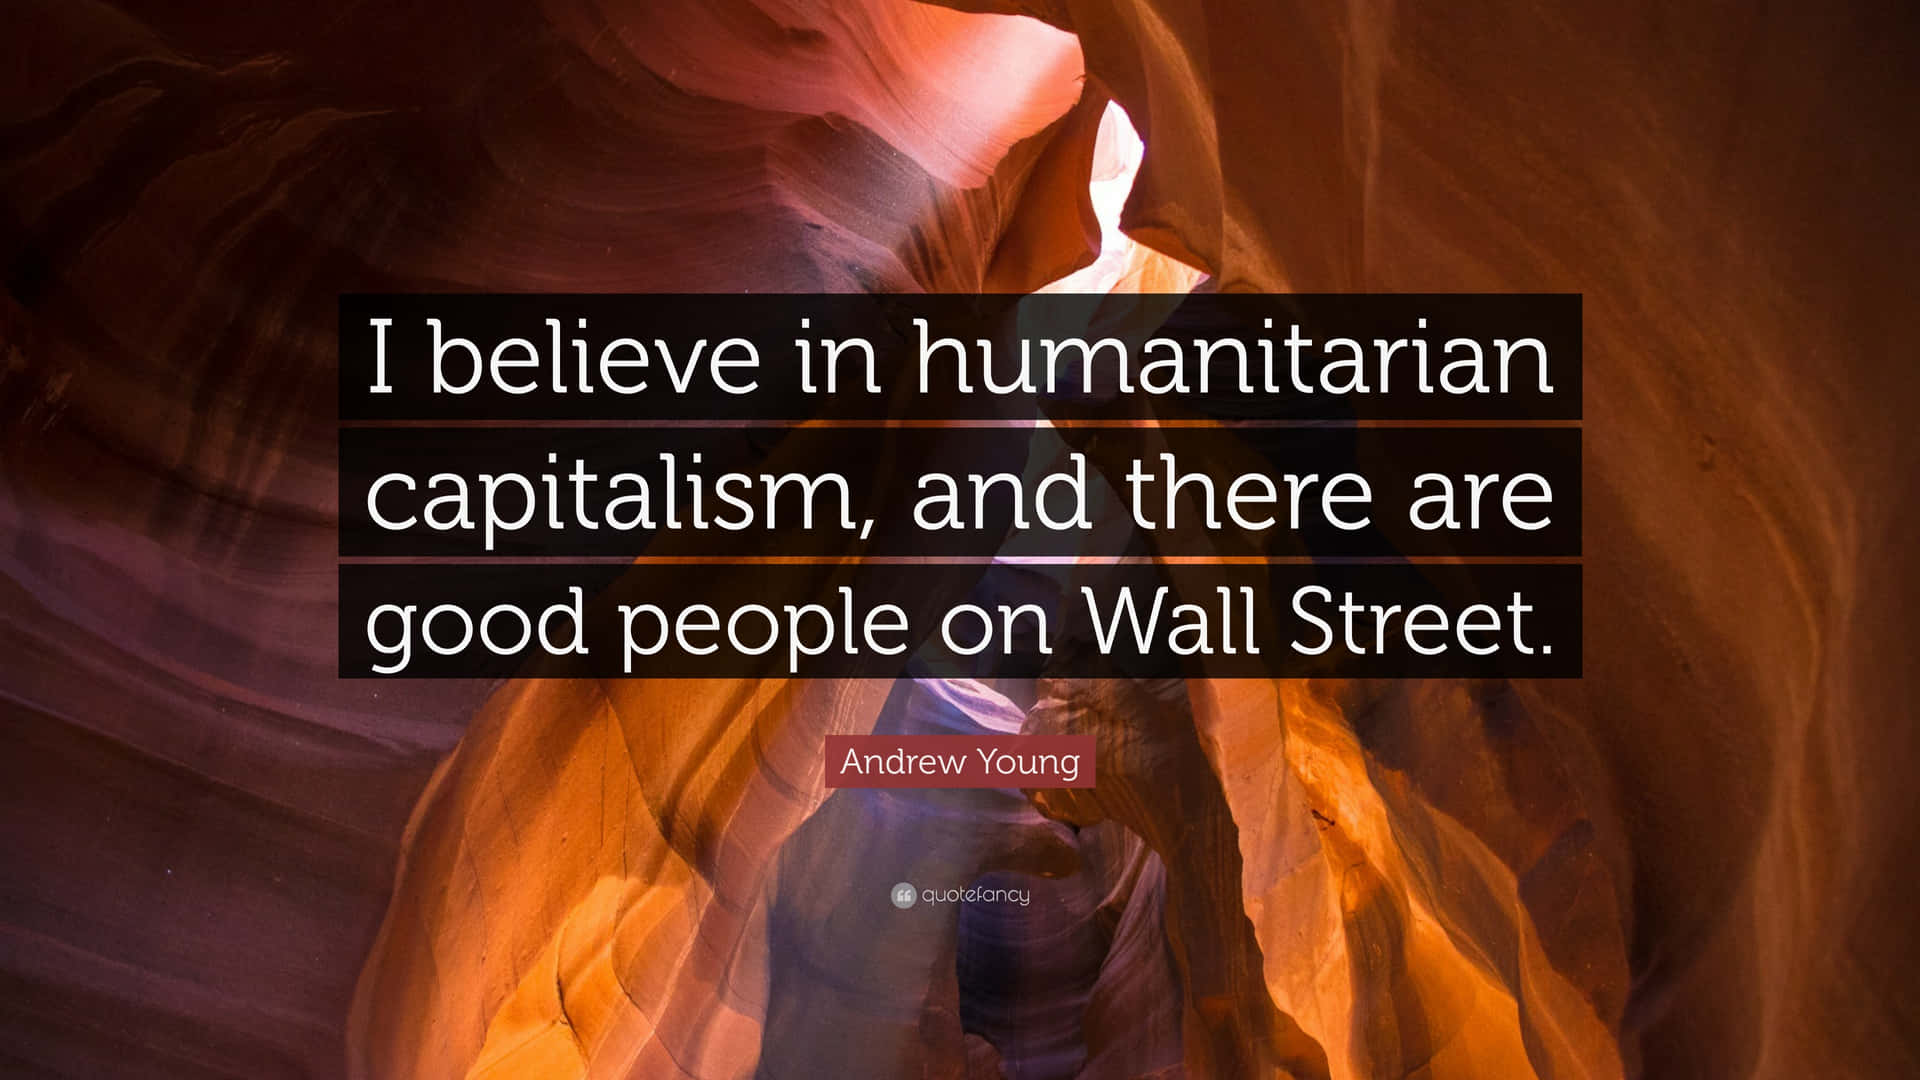 Humanitarian Capitalism Quote Wallpaper